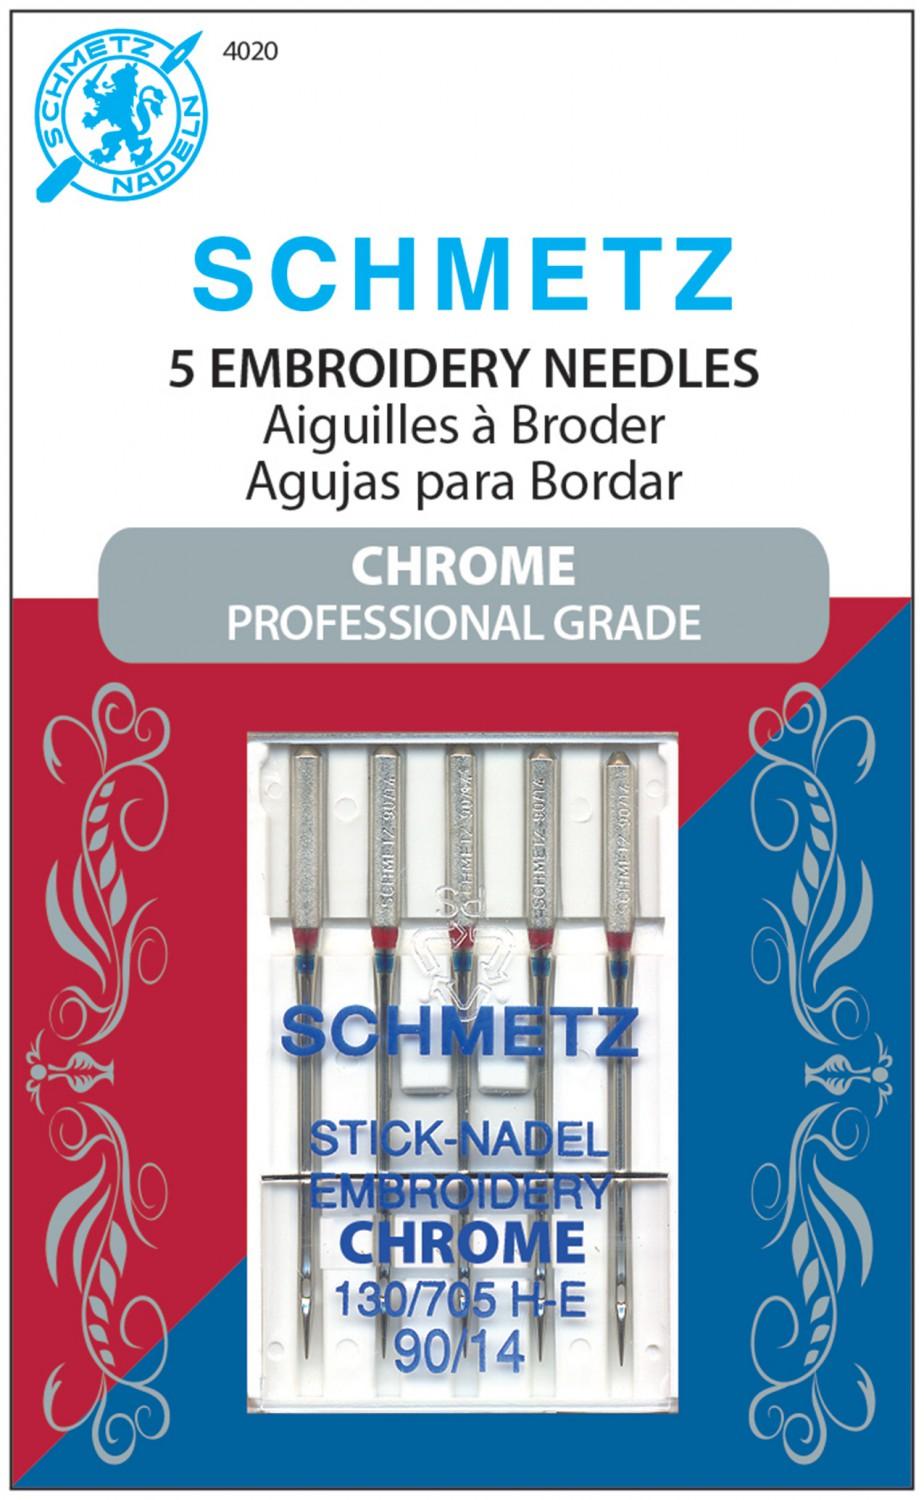 Chrome Embroidery Schmetz Needle 5 ct, Size 90/14 # 4020